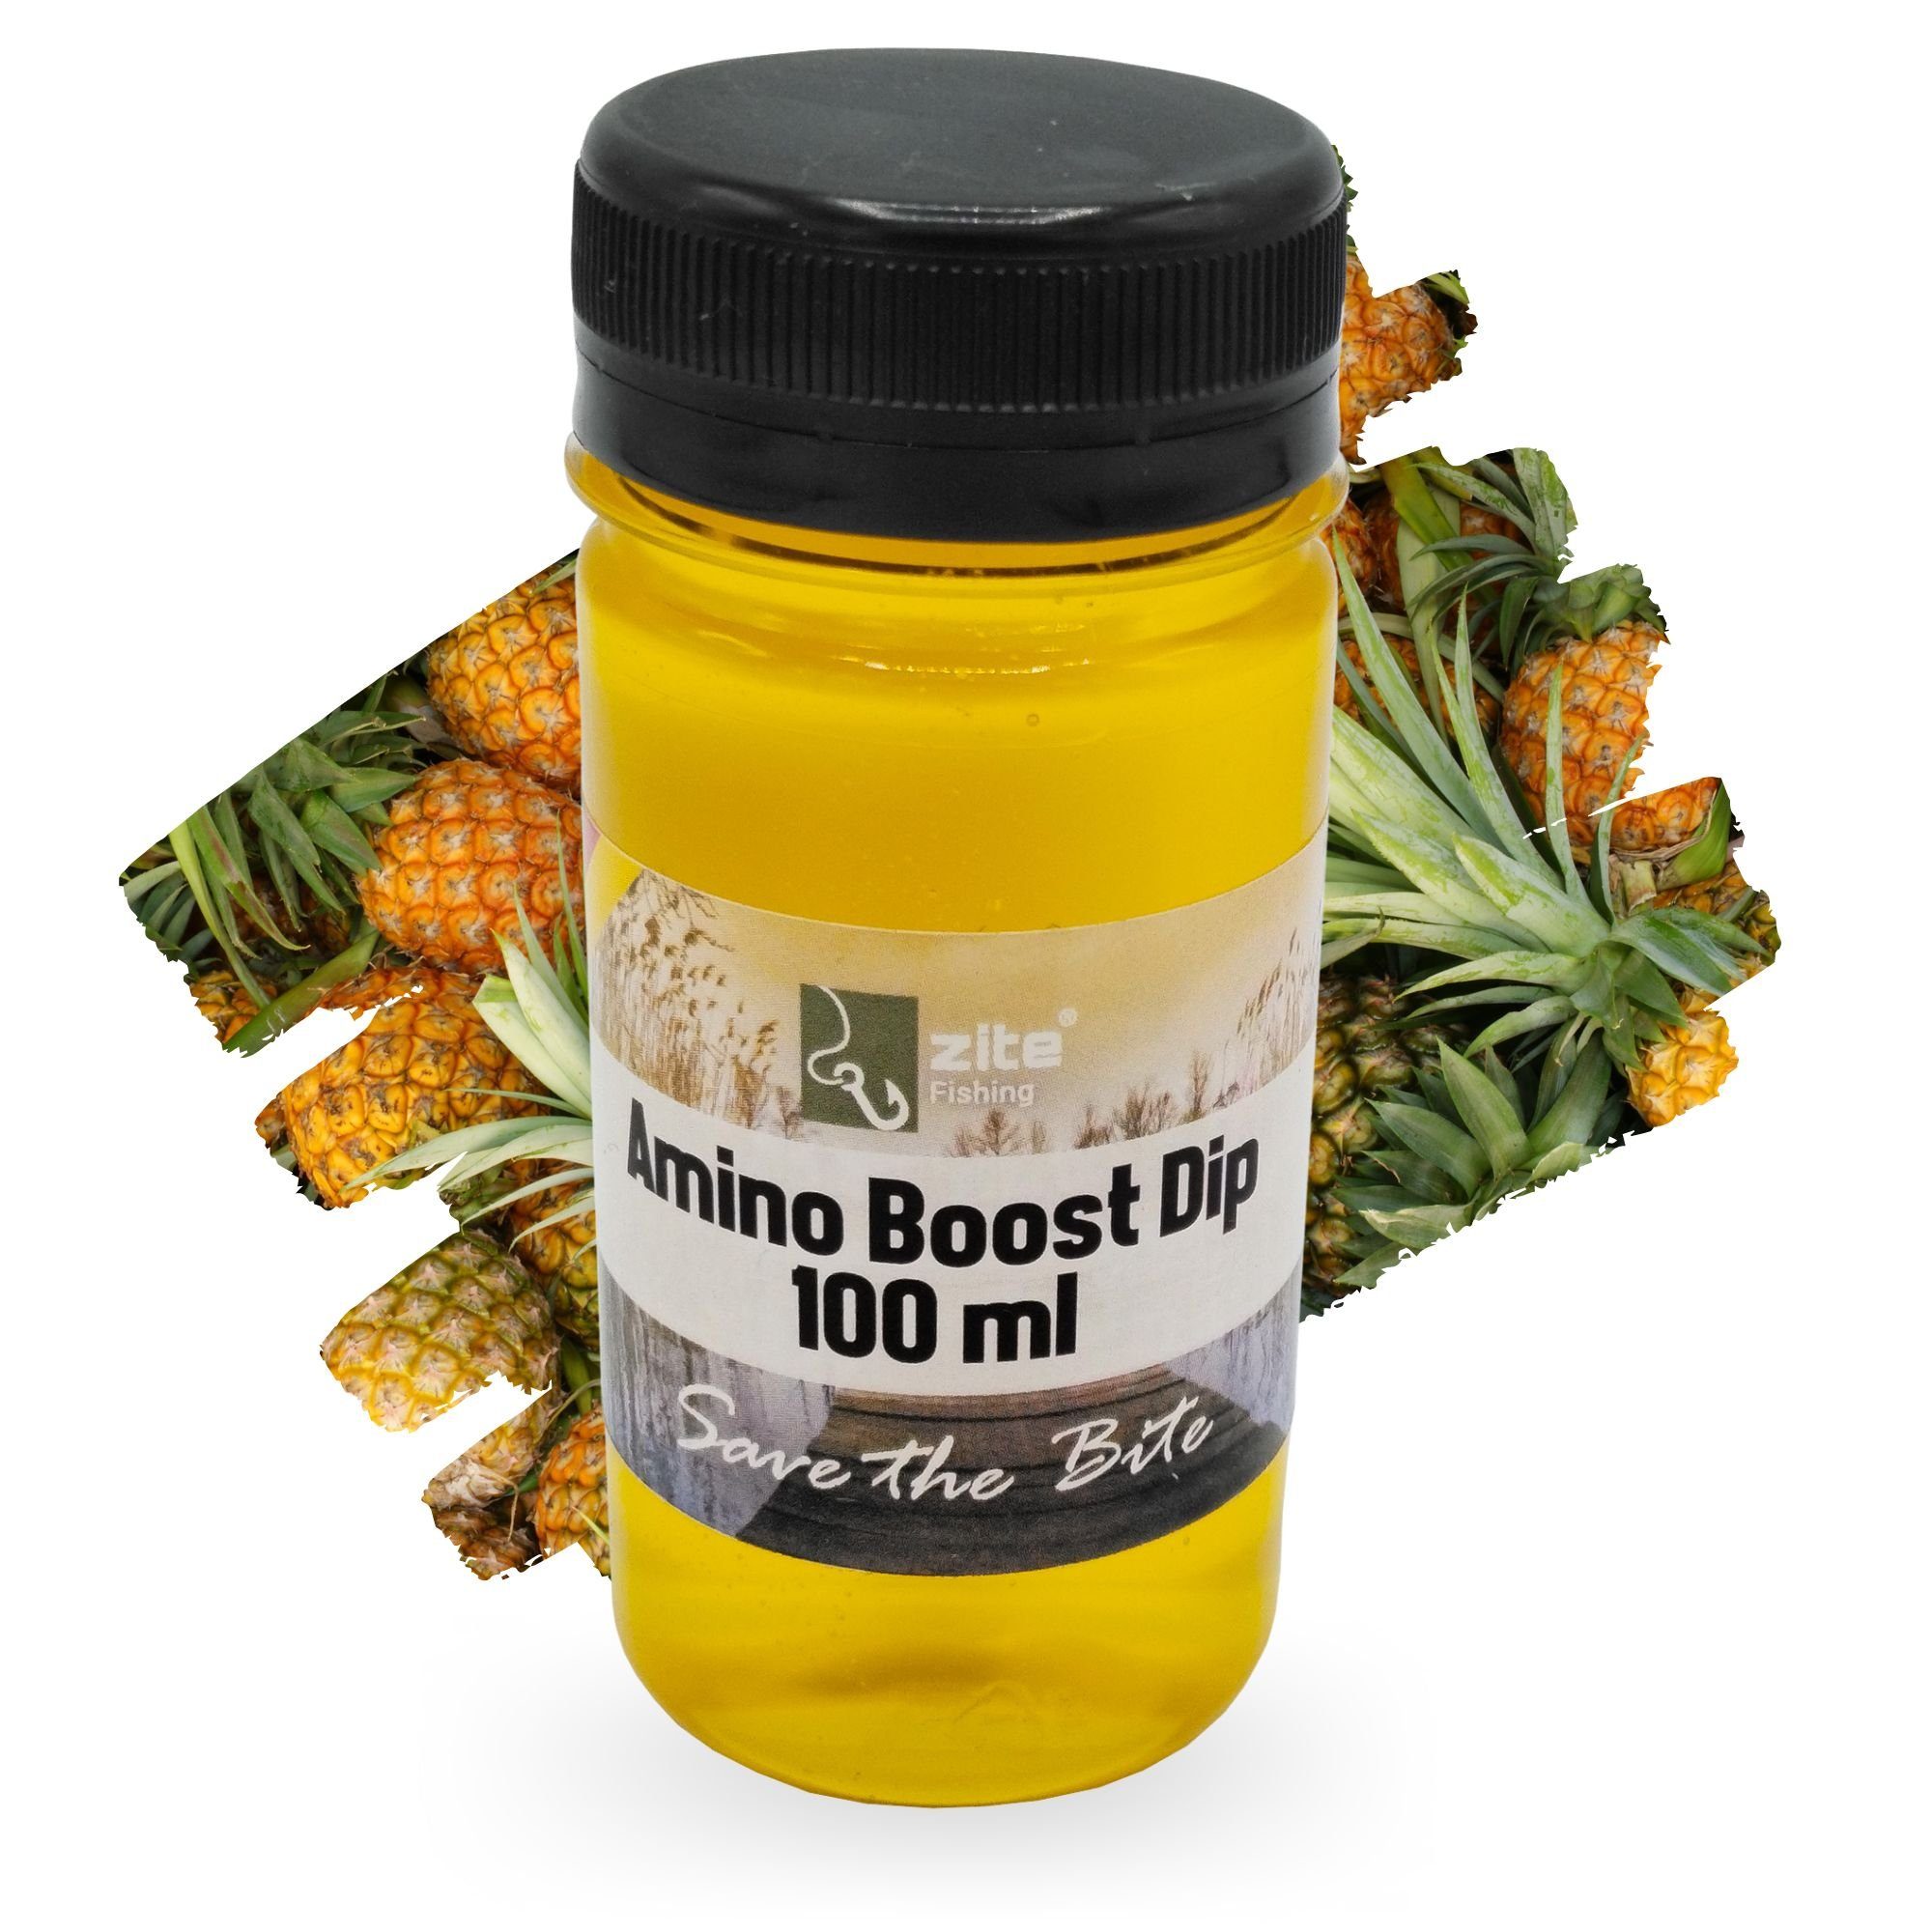 Zite Fischlockstoff Amino Dip 100 ml - Lockstoff Karpfen - schnelleinziehend & intensiv Ananas